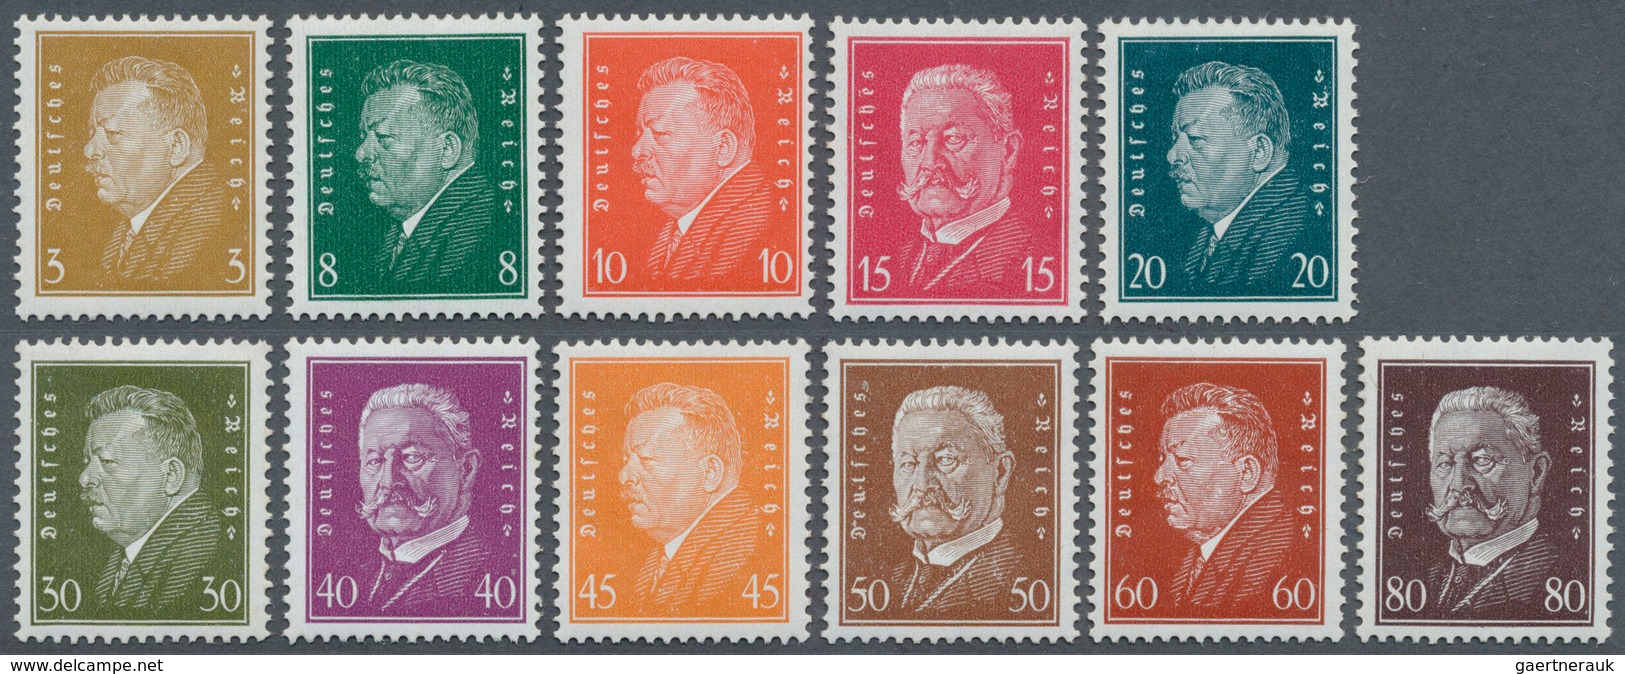 Deutsches Reich - Weimar: 1928, Reichspräsidenten, Teilsatz, Postfrisch, Mi. 1050,- Euro - Covers & Documents